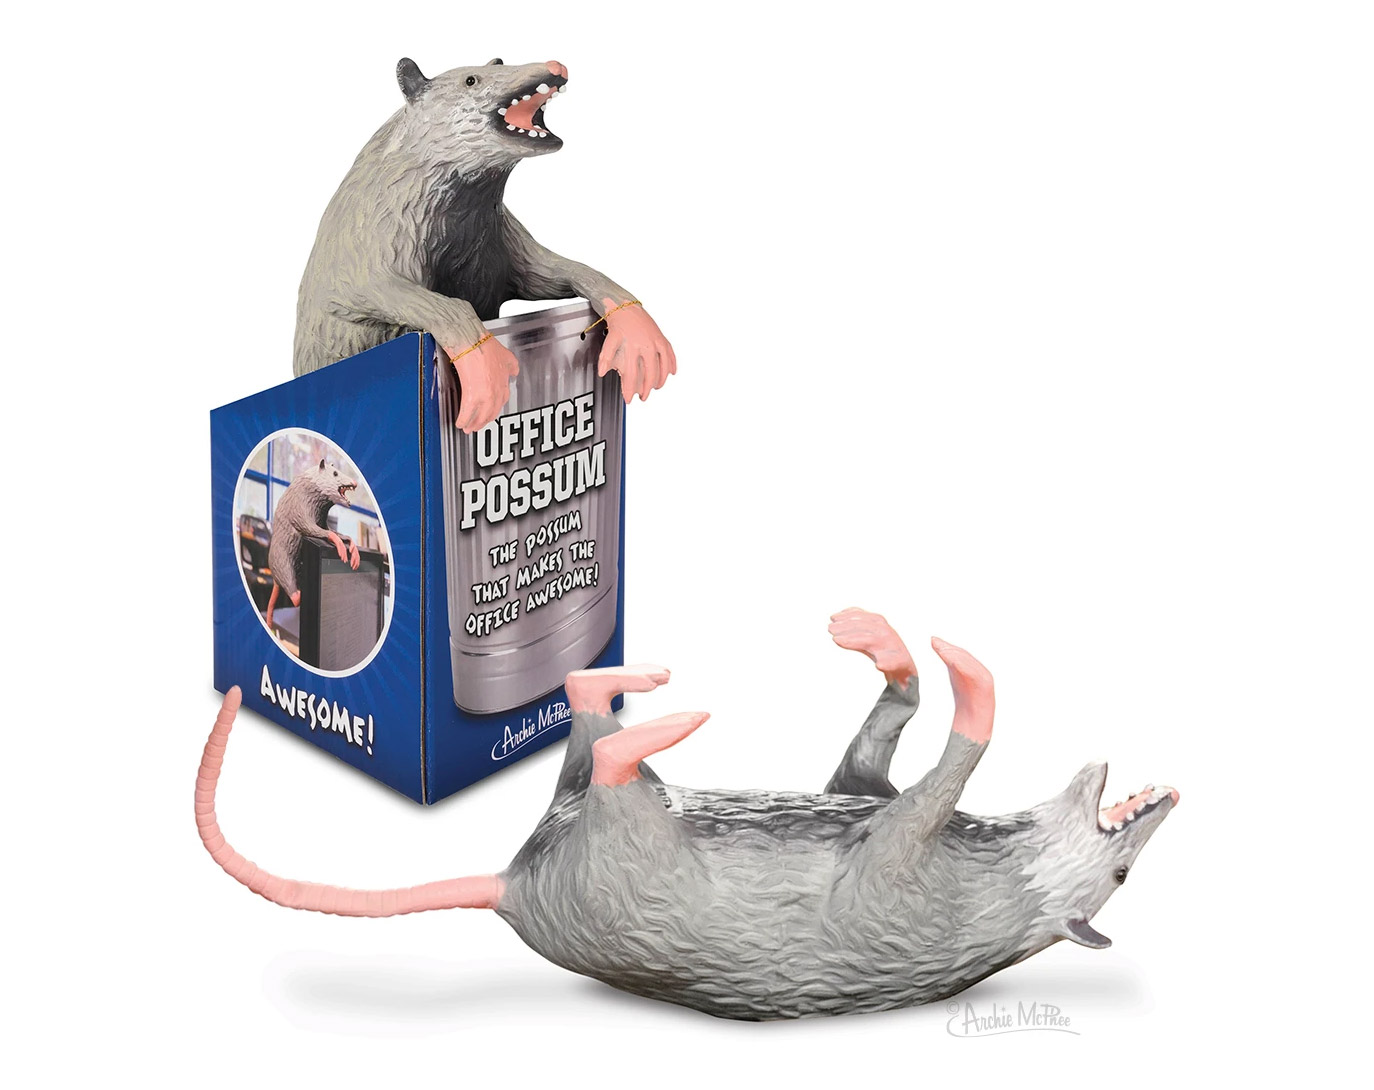 Fake office possum - Funny prank possum for the office trash canoffice trash possum - Funny prank possum for the office trash can